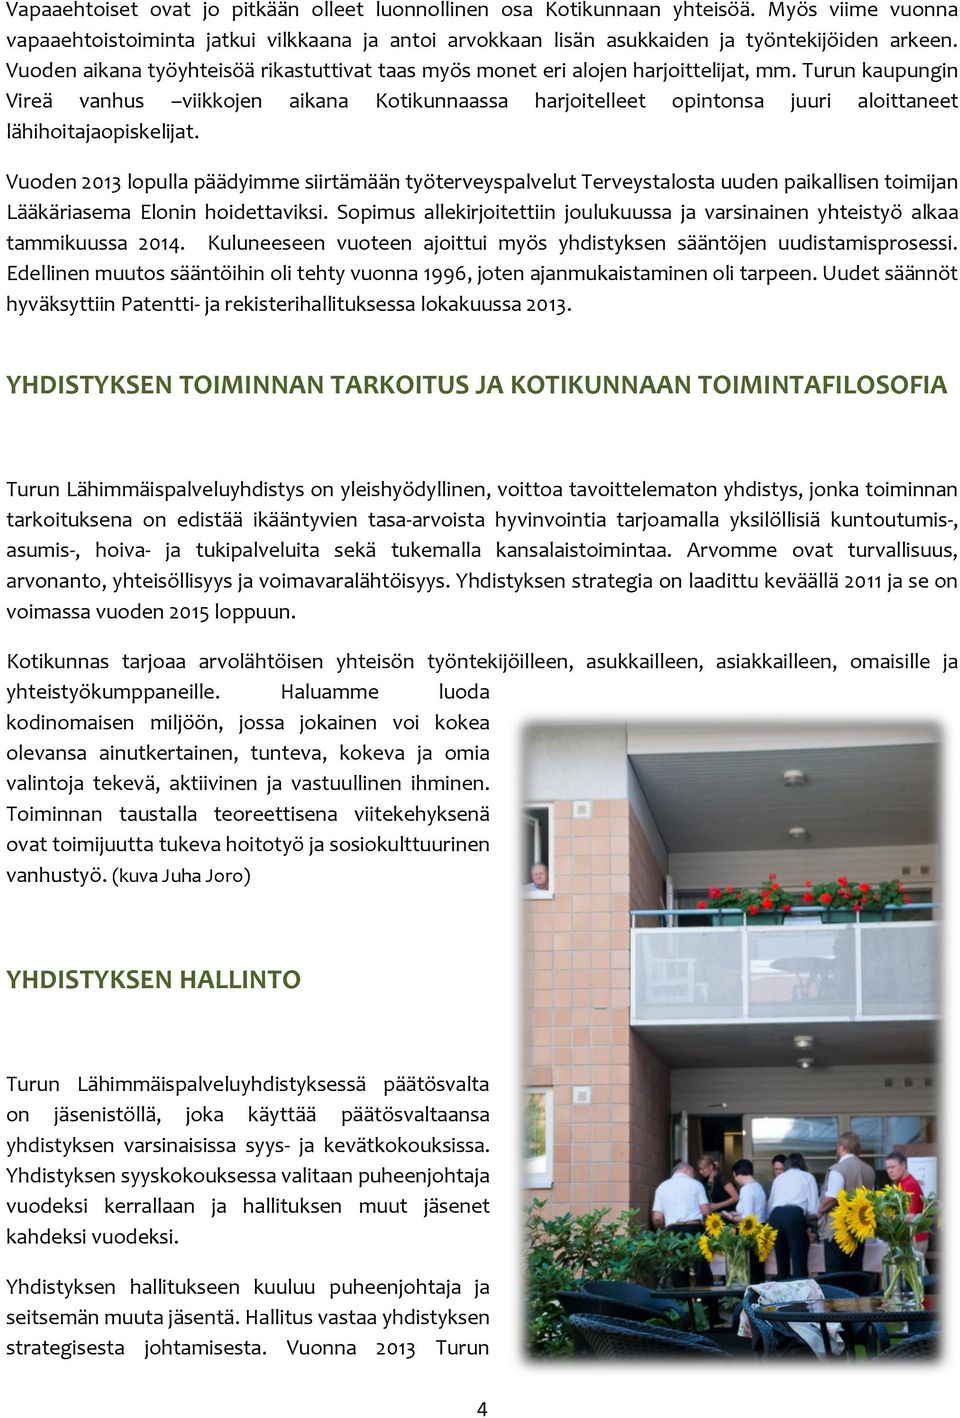 Turun kaupungin Vireä vanhus viikkojen aikana Kotikunnaassa harjoitelleet opintonsa juuri aloittaneet lähihoitajaopiskelijat.